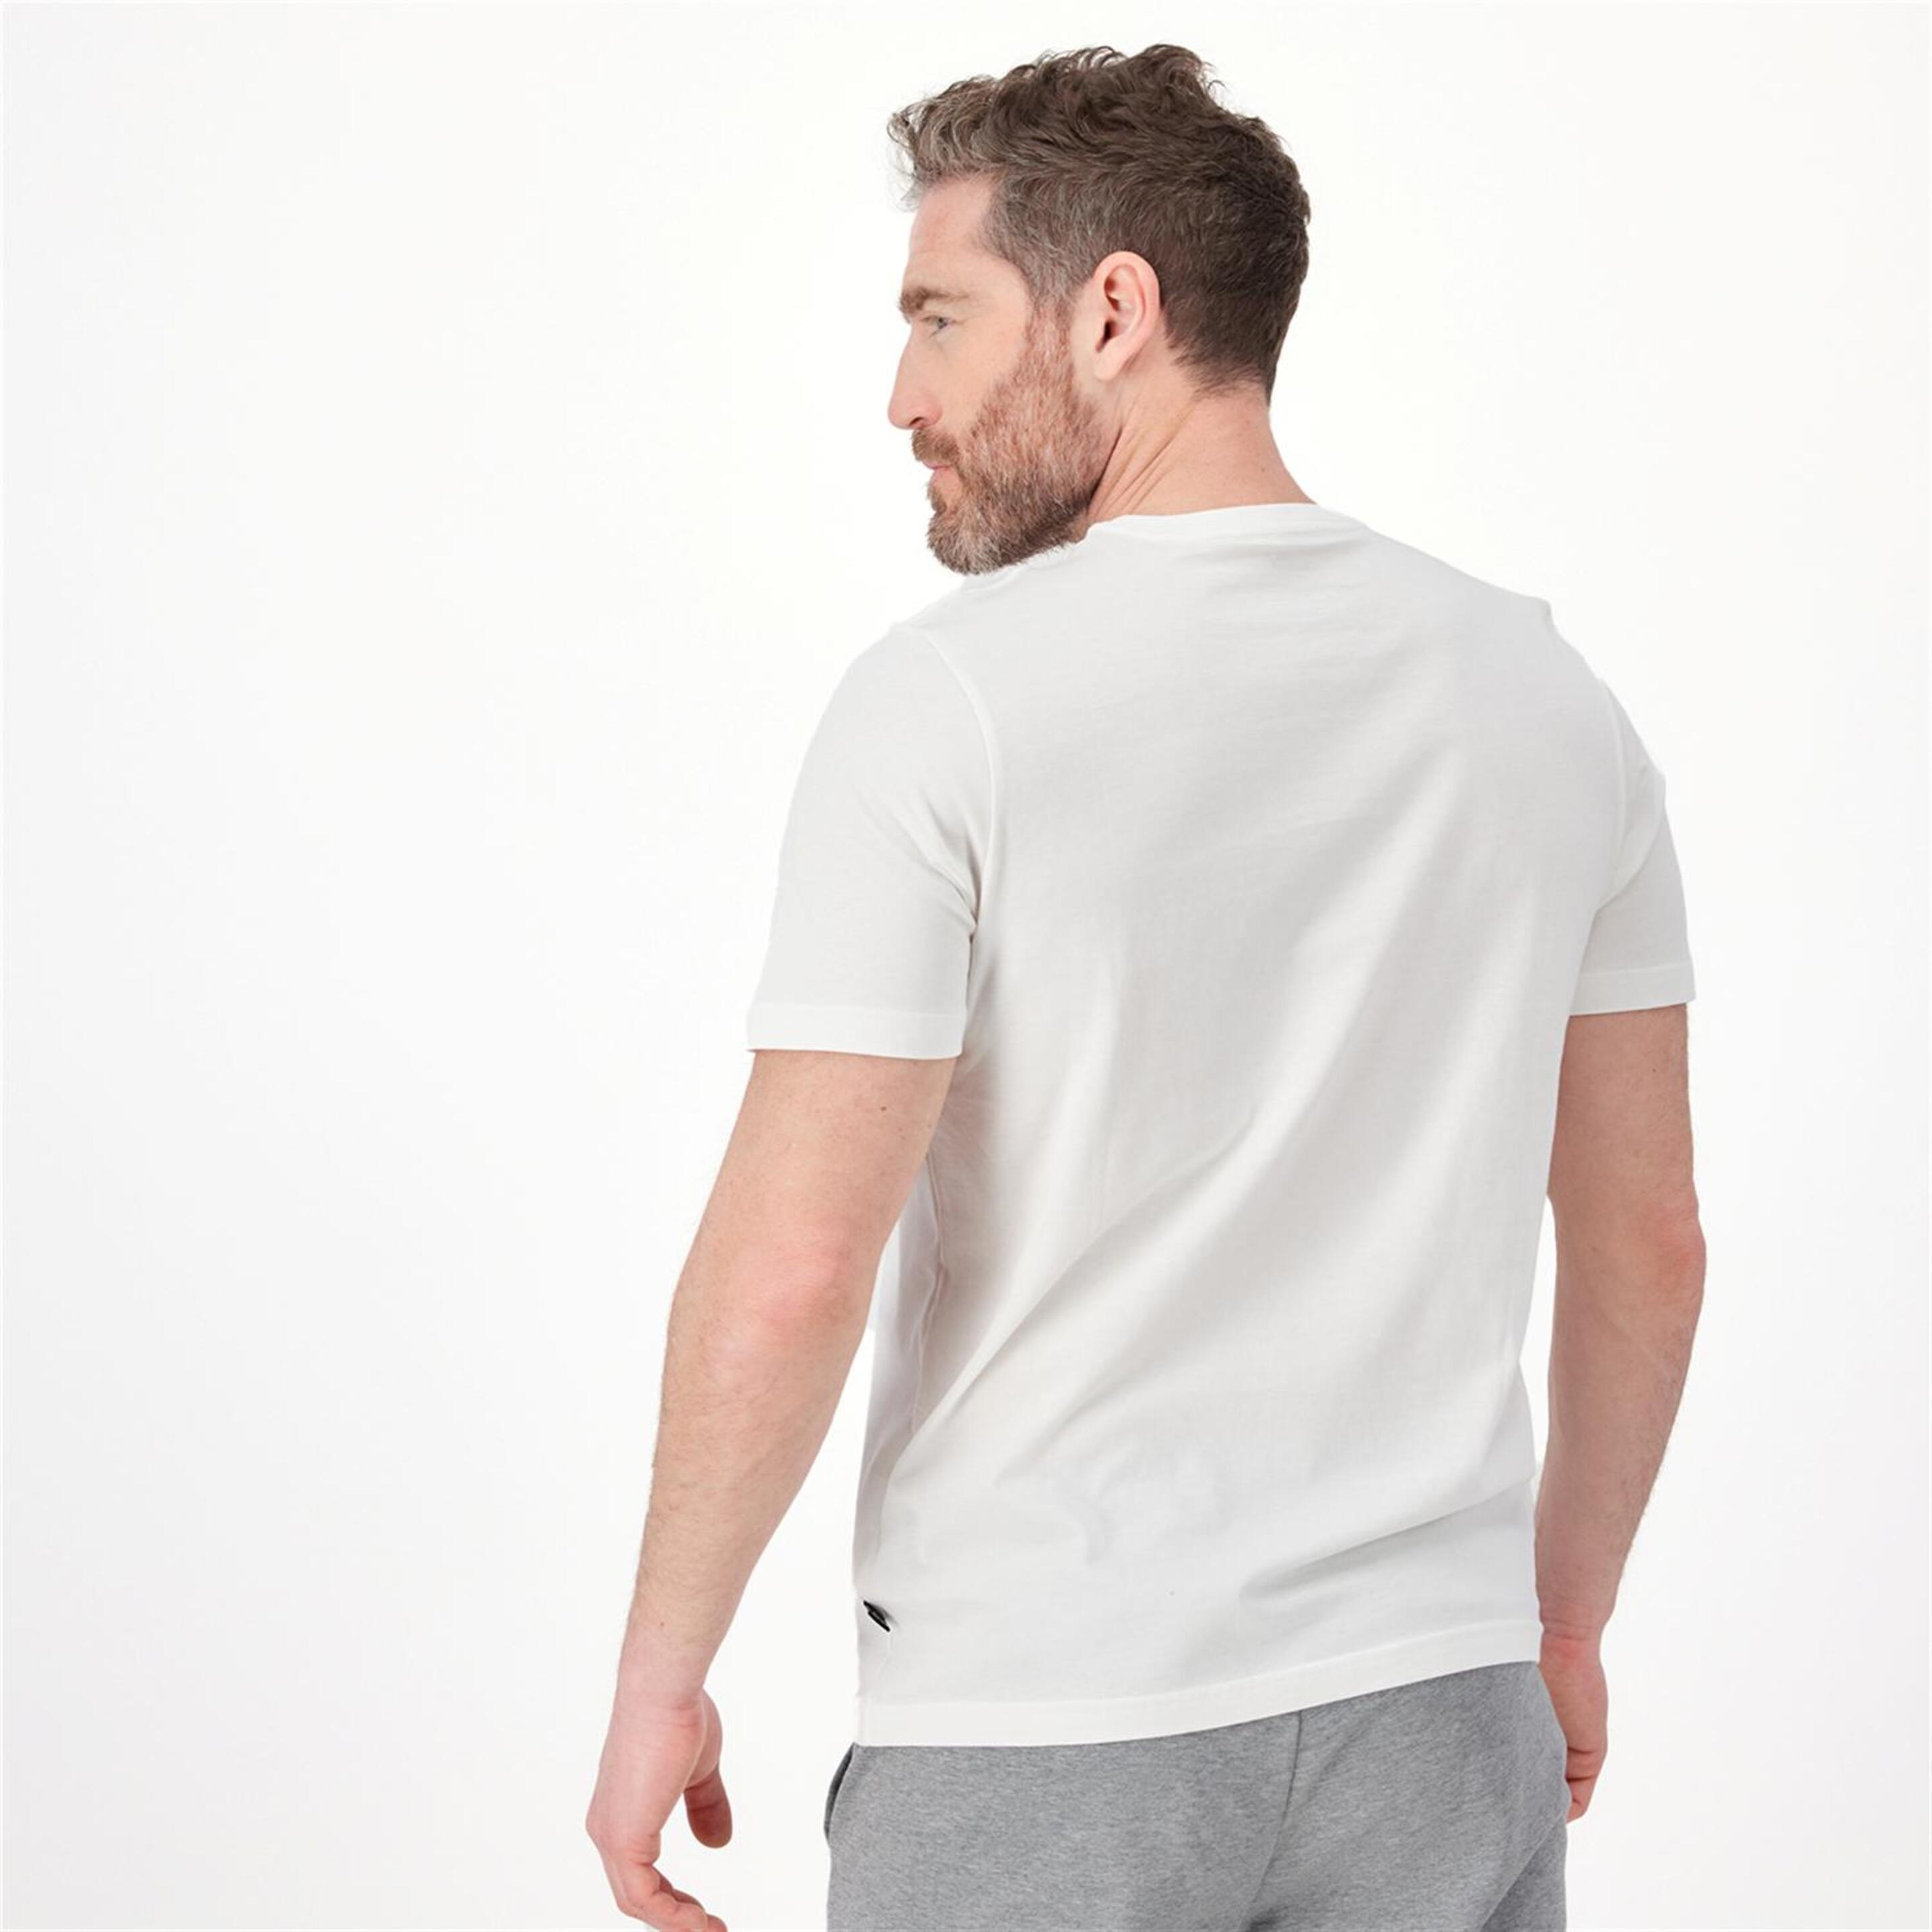 Puma Small Logo - Blanco - Camiseta Hombre